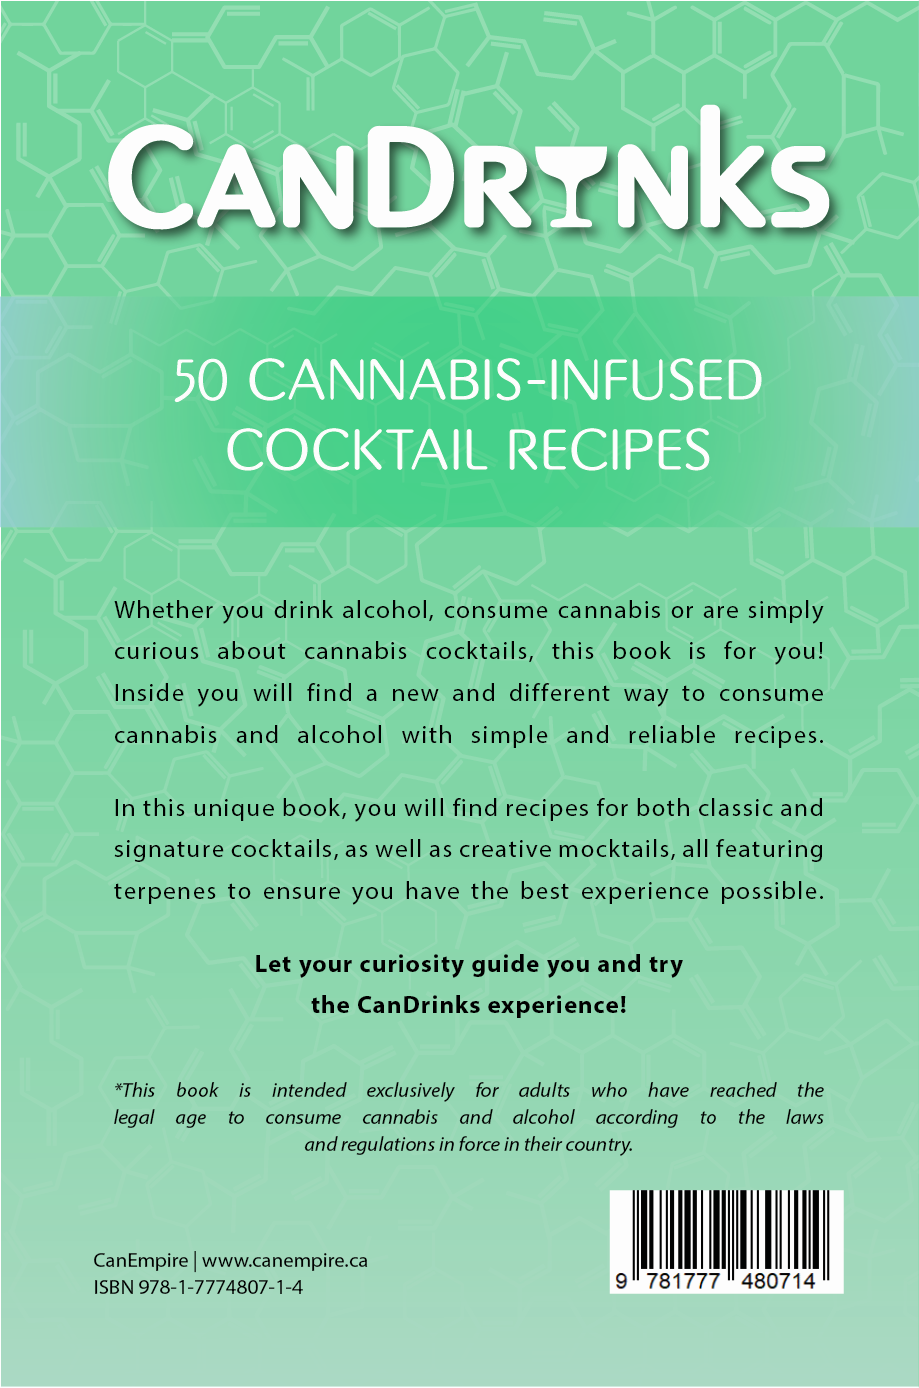 Image du livre CanDrinks : Cocktails & Cannabis par CanEmpire & Alex Vallieres. Ce livre de recettes de cocktails & de mocktails infusés au cannabis présente un guide sécuritaire autant pour les débutants que pour les plus expérimentés.